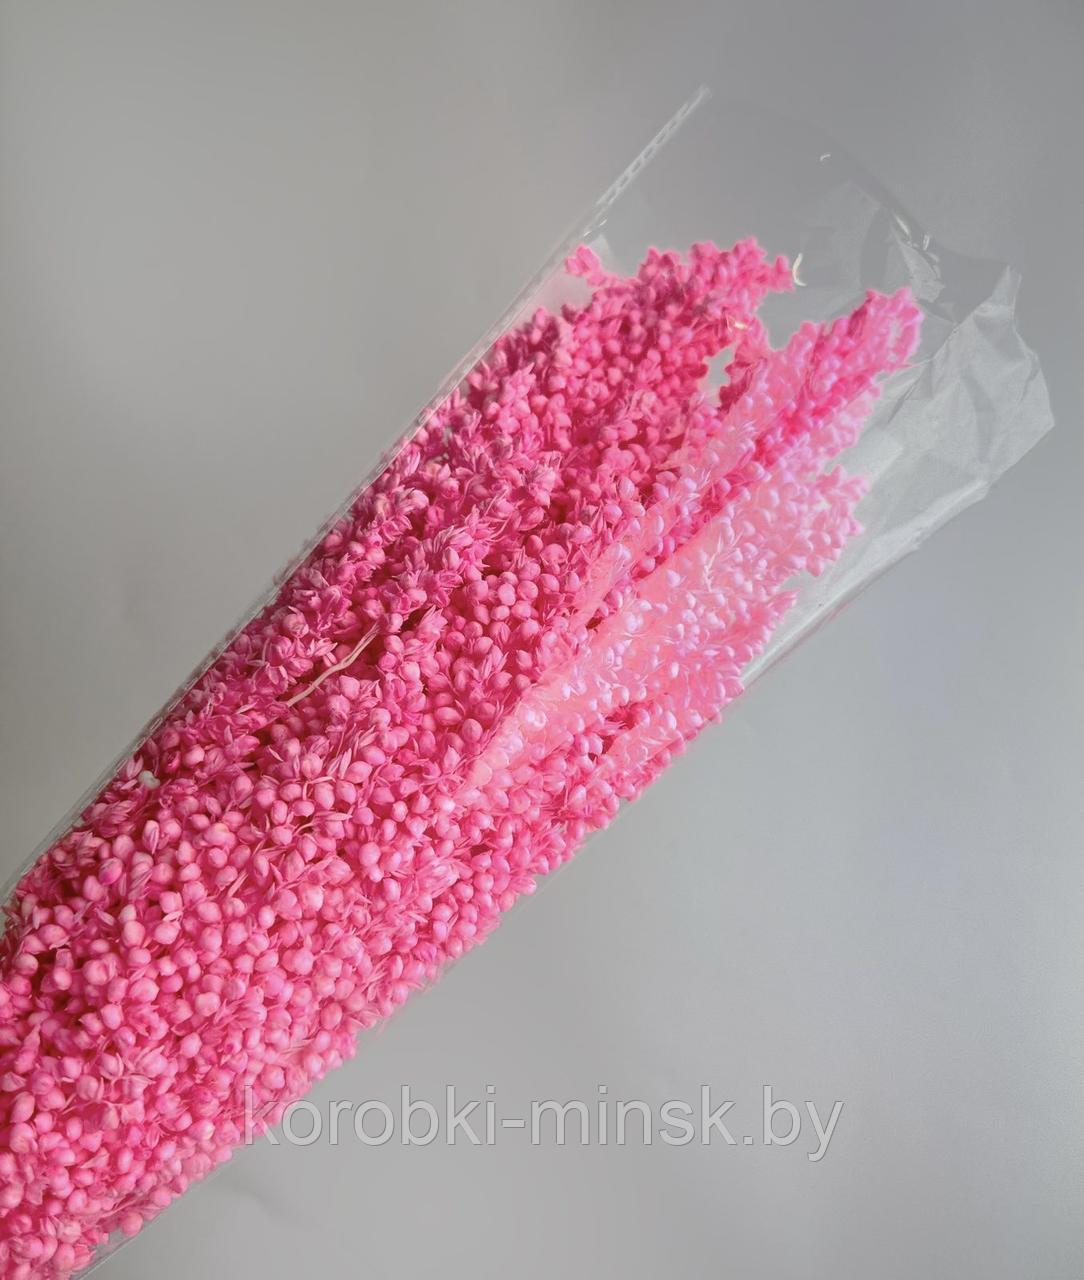 Сухоцвет "Сорго" Насыщенный розовый, длина 70-80 см, 130-180 гр/упак